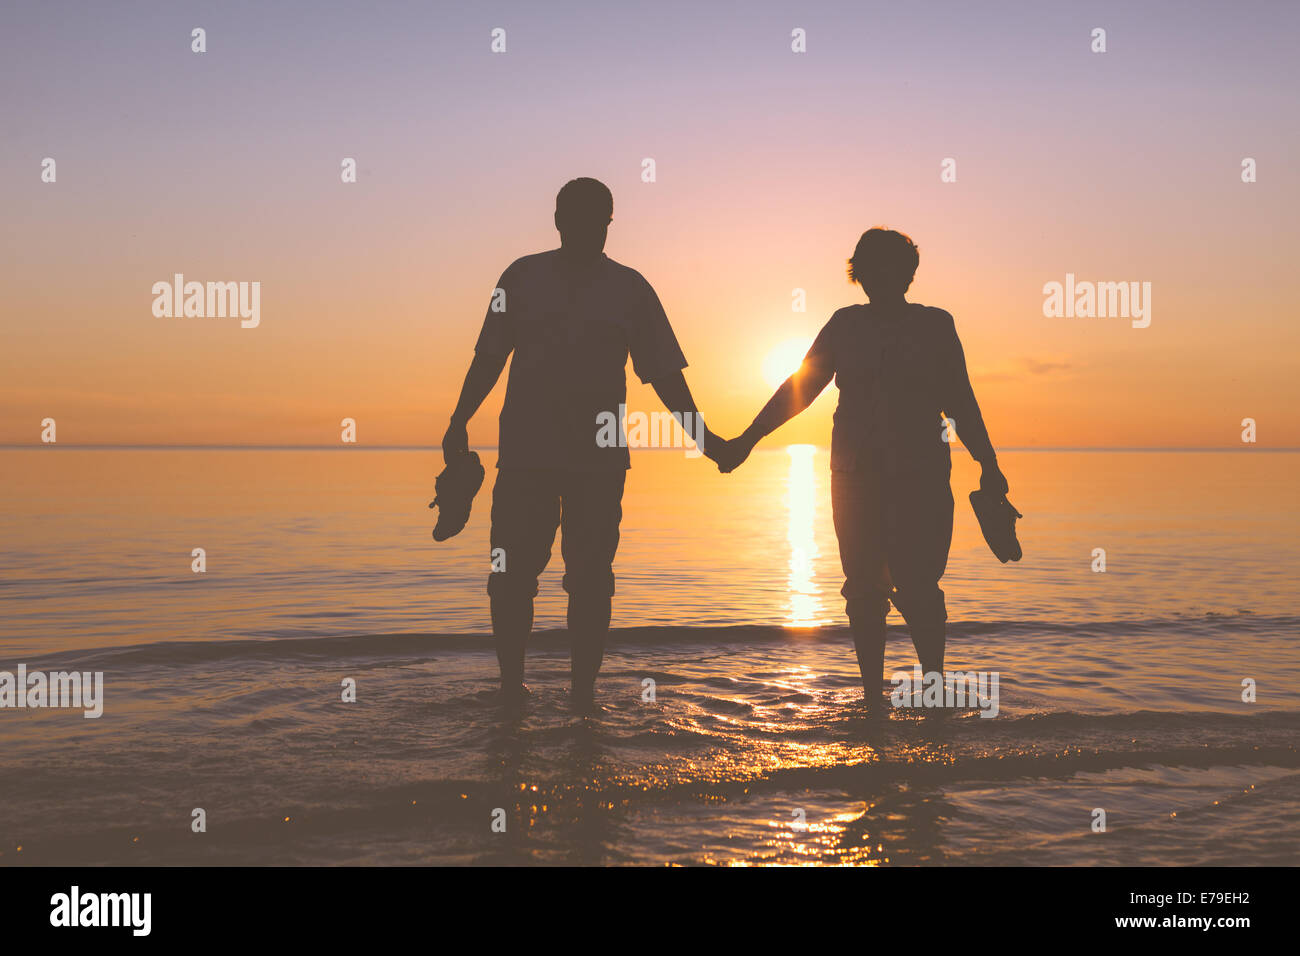 Happy senior couple silhouettes sur la plage Banque D'Images